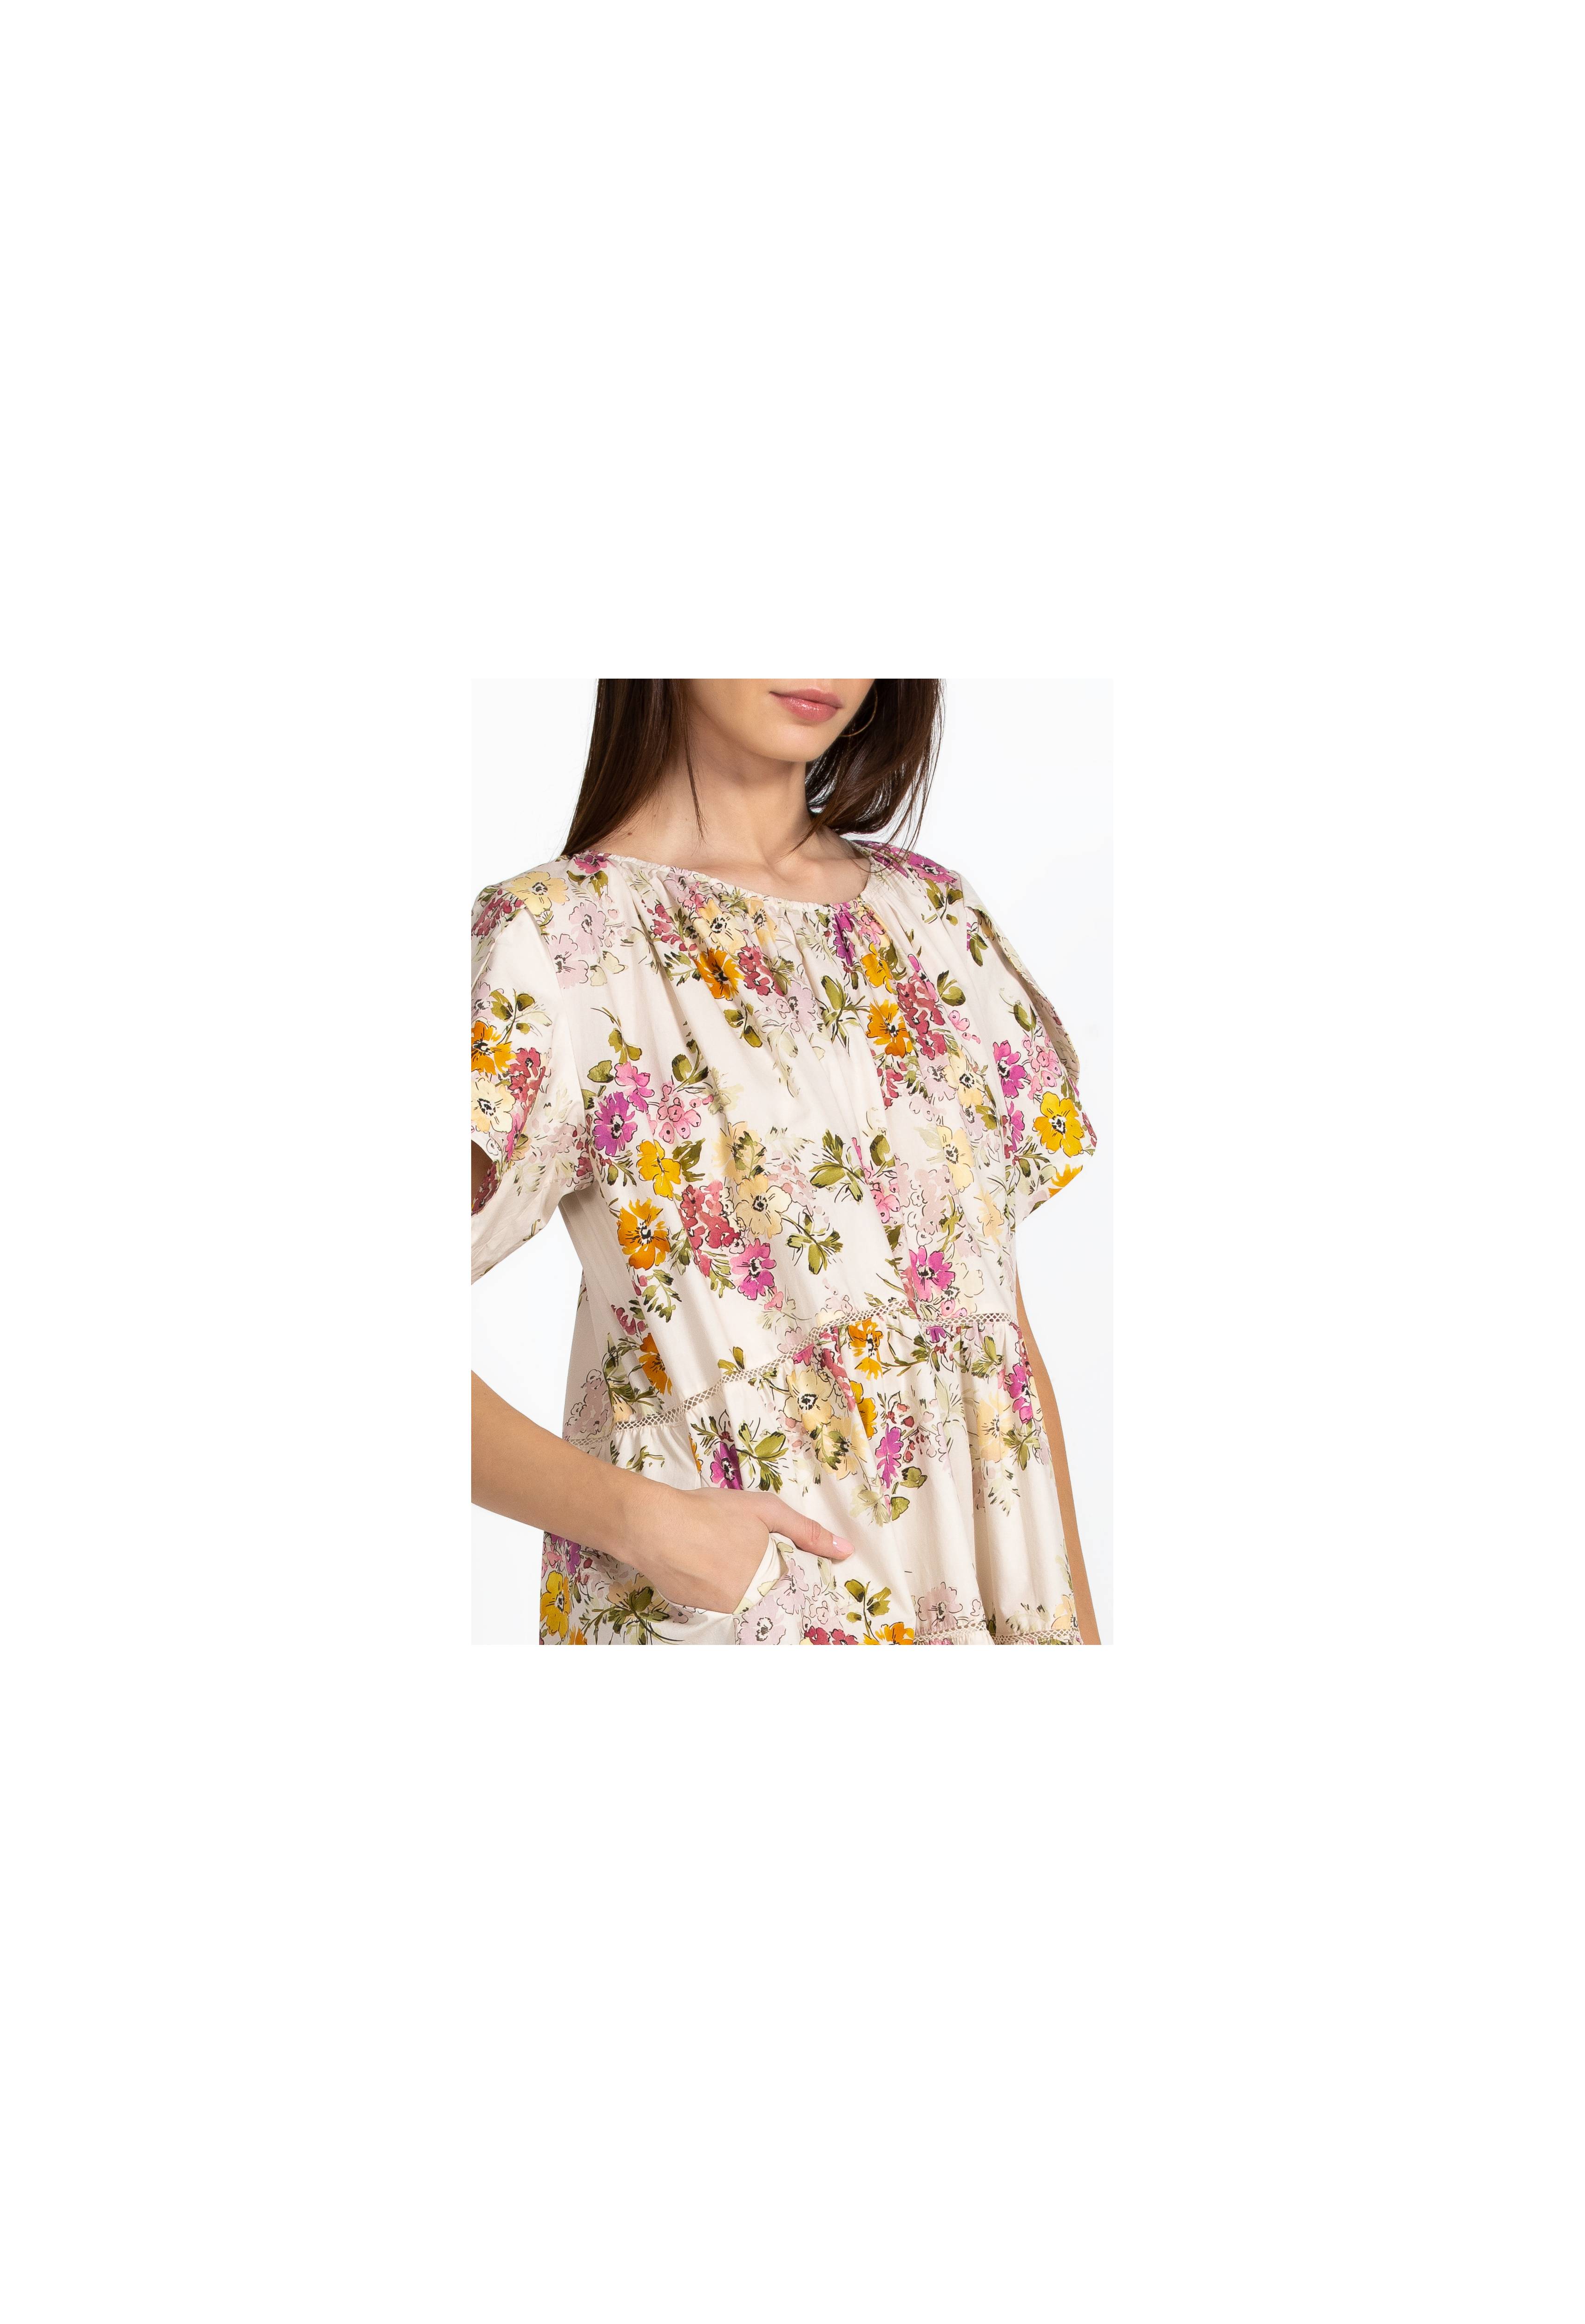 Magnolia Tiered Mini Dress, , large image number 5